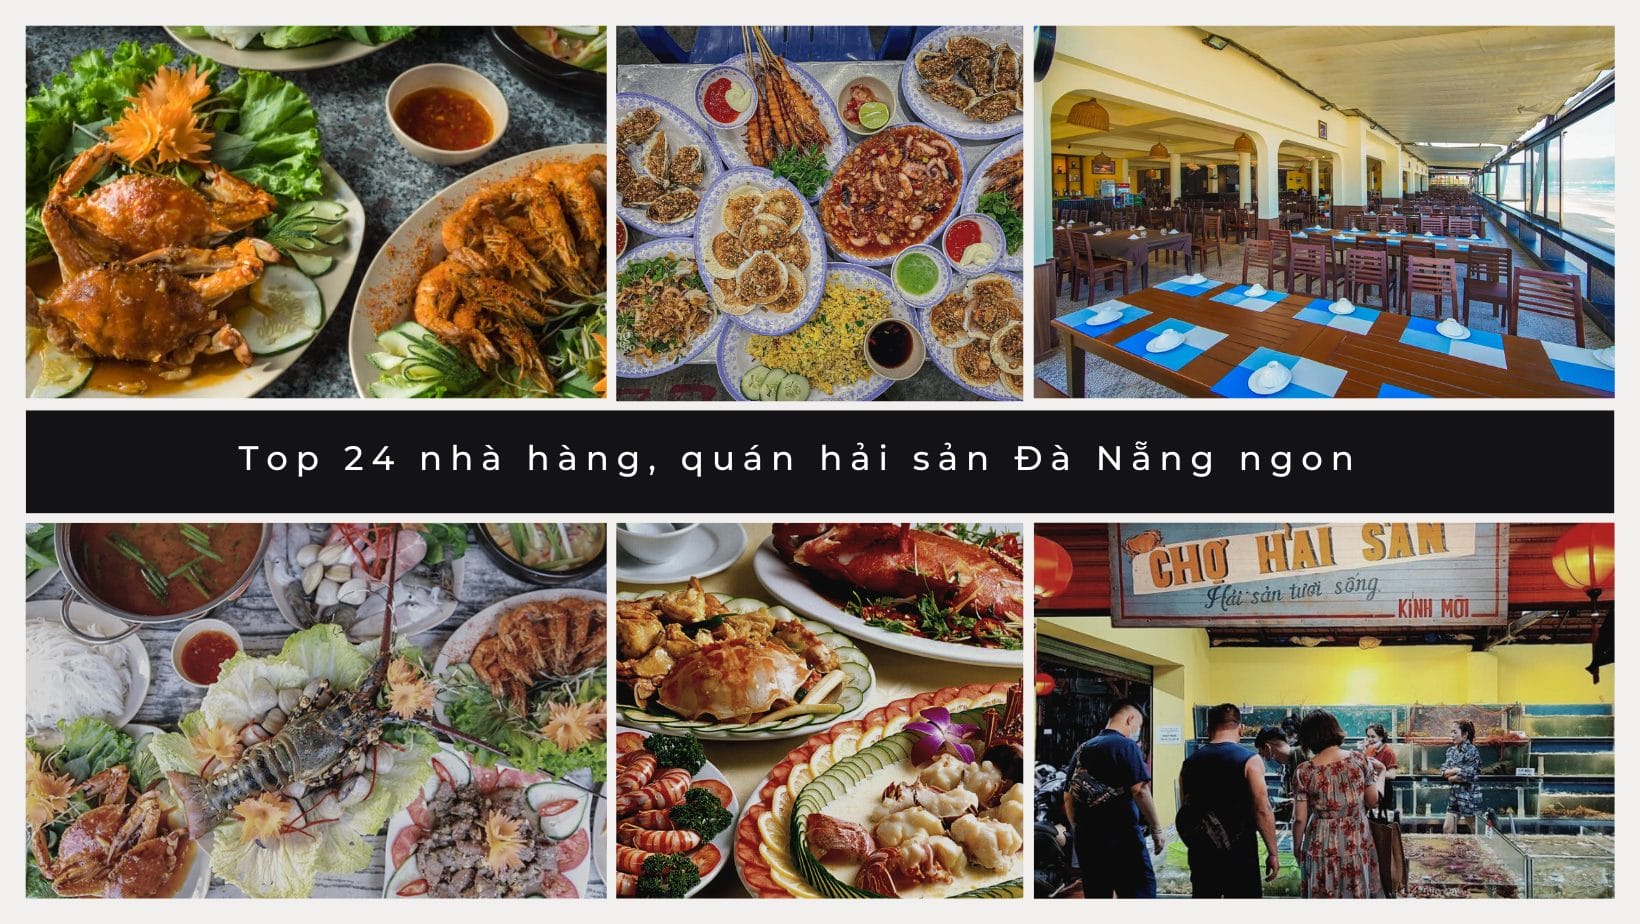 Top 24 nhà hàng, quán hải sản Đà Nẵng ngon, view đẹp, giá rẻ